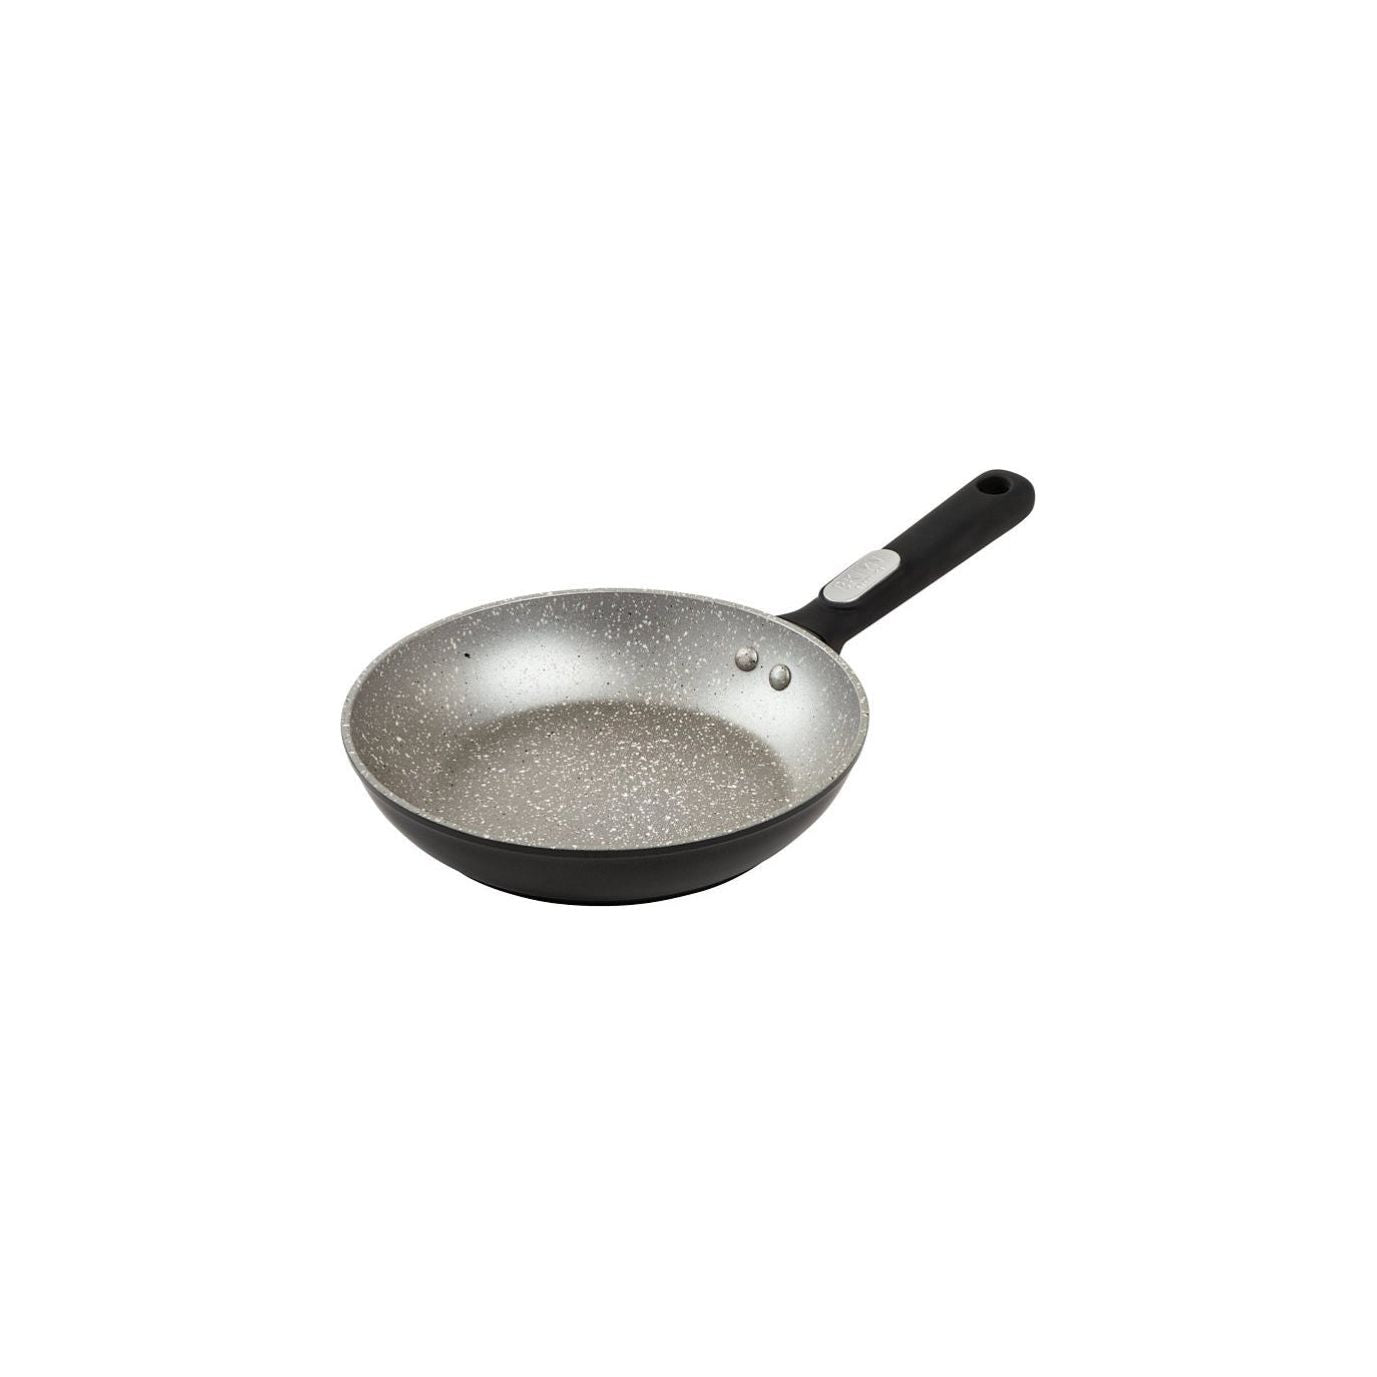 Brooklyn Steel Co.-Brooklyn Steel Co. 8" Zodiac Nonstick Speckle Fry Pan (Grey) - Brandat Outlet